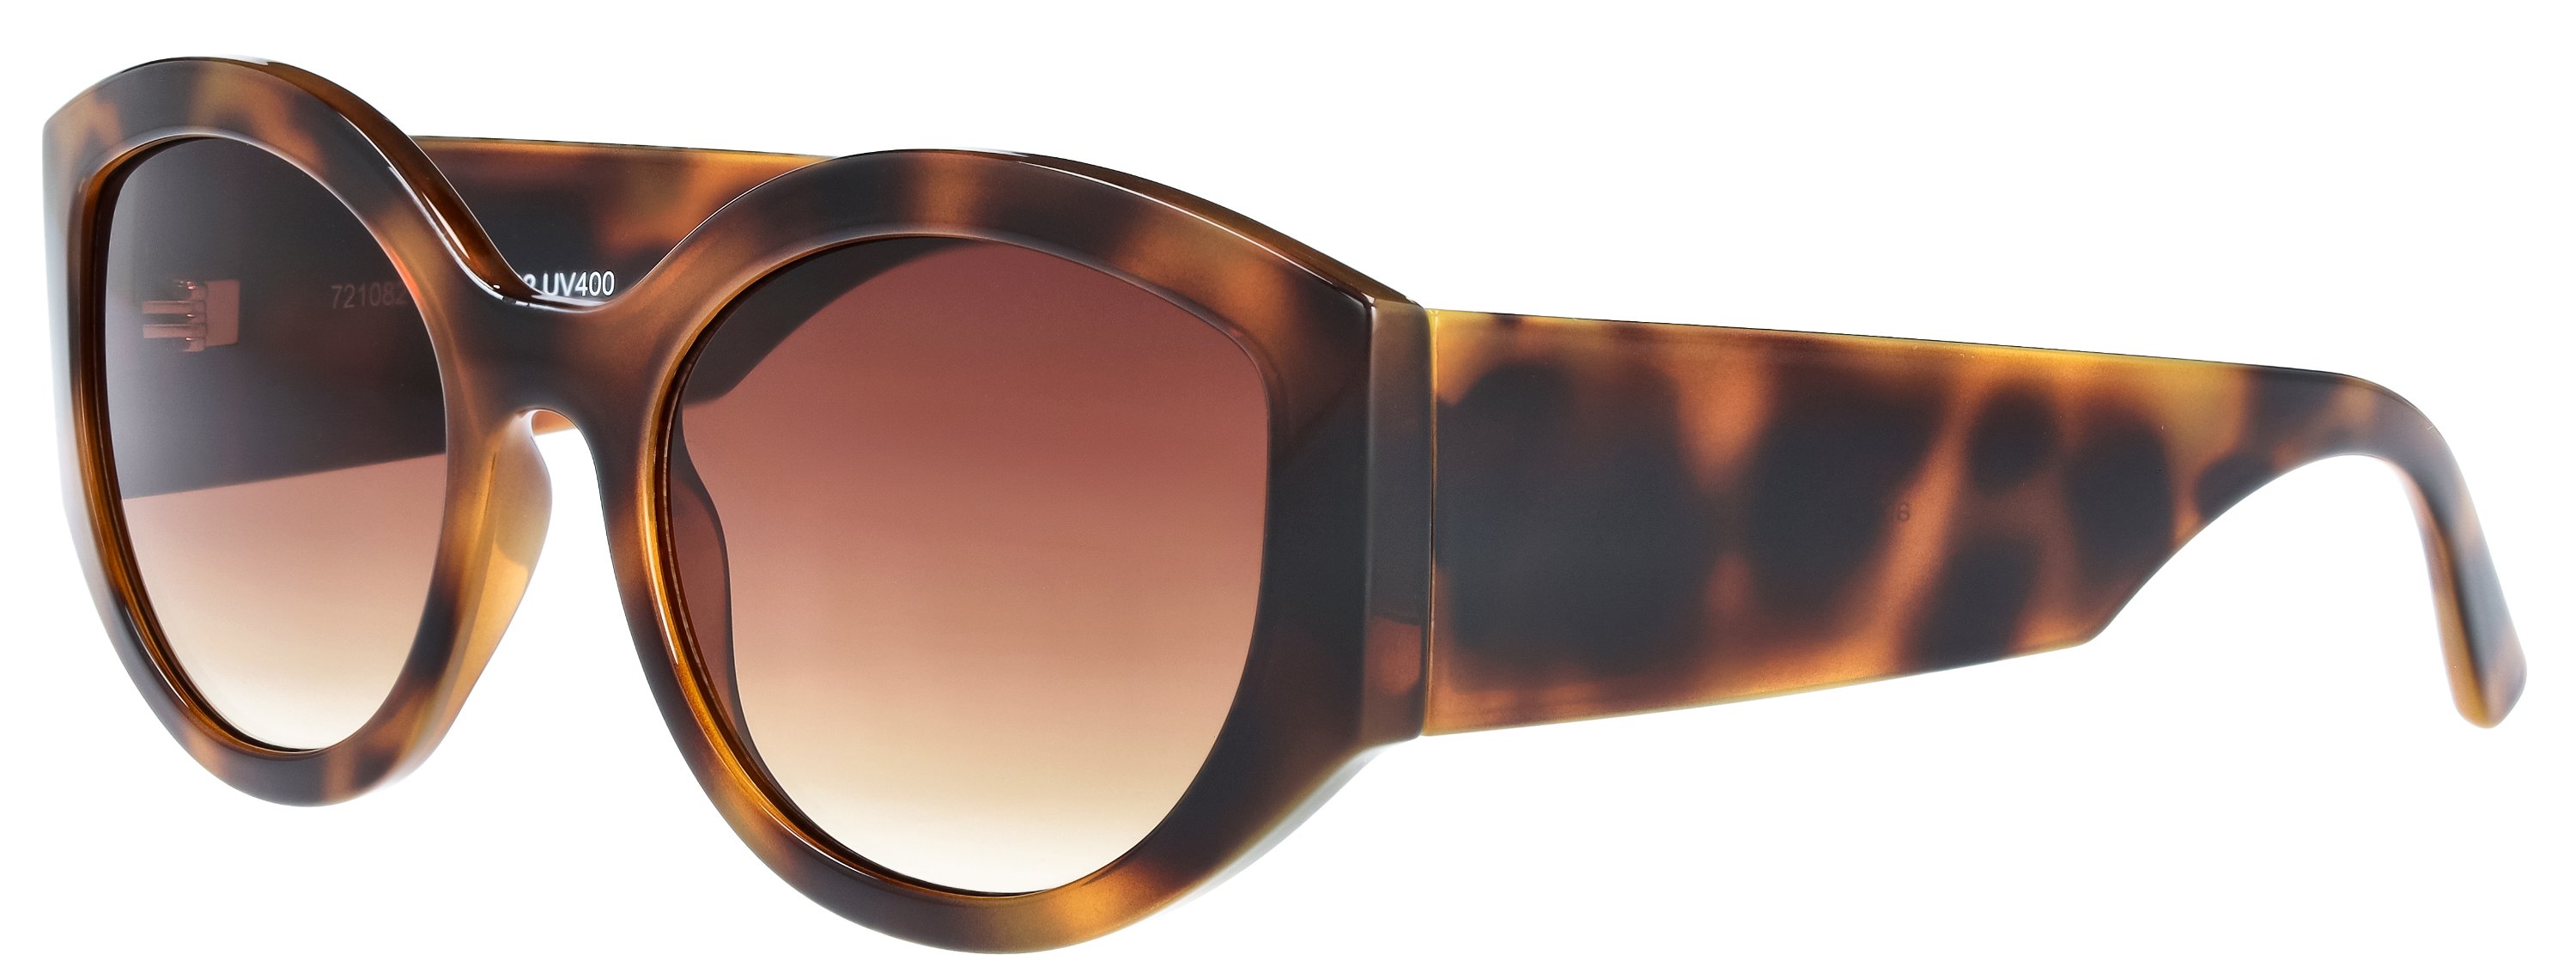 Das Bild zeigt die Sonnenbrille 721082 von der Marke Abele Optik in havanna.